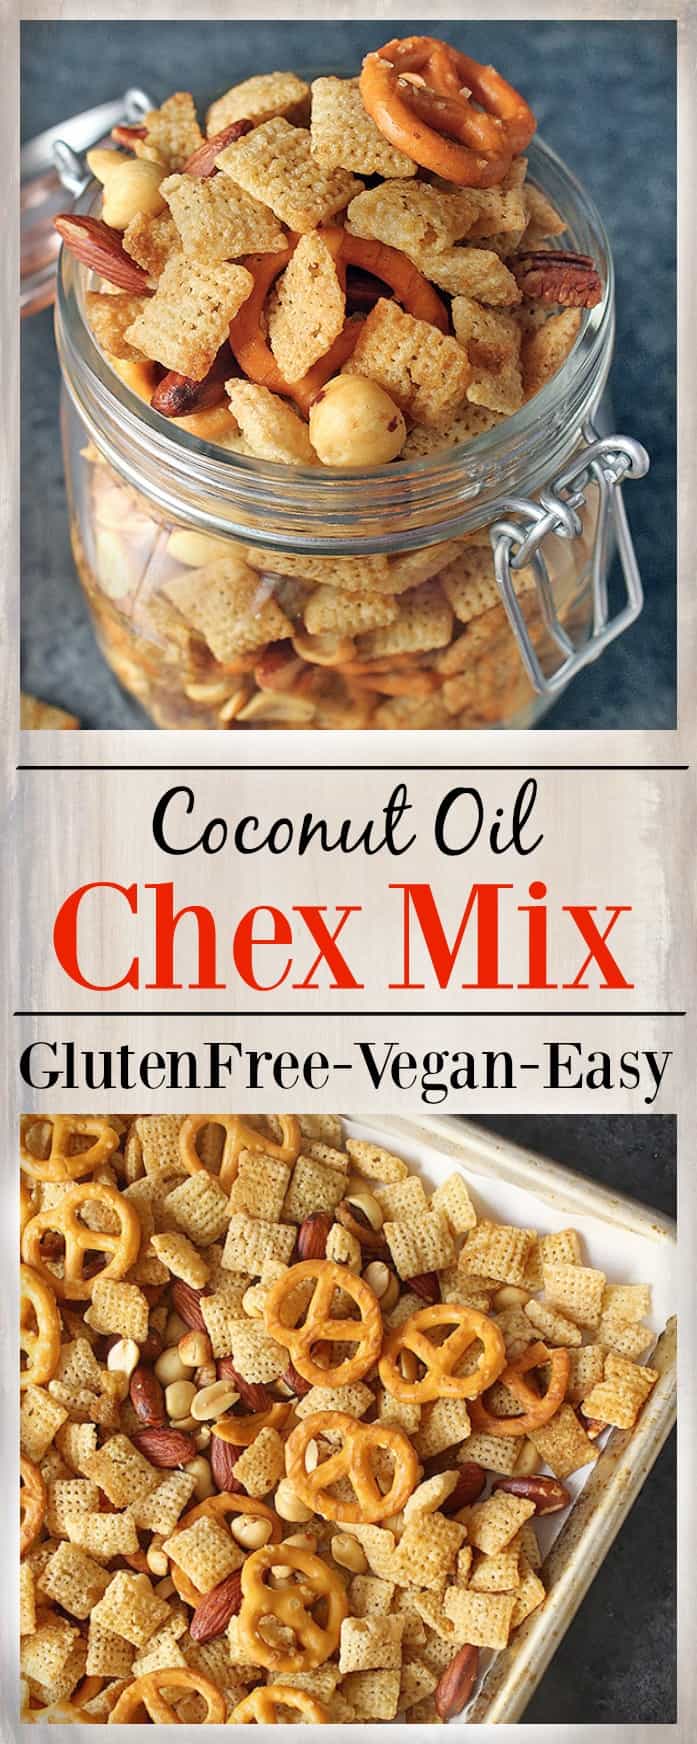 Coconut Oil Chex Mix